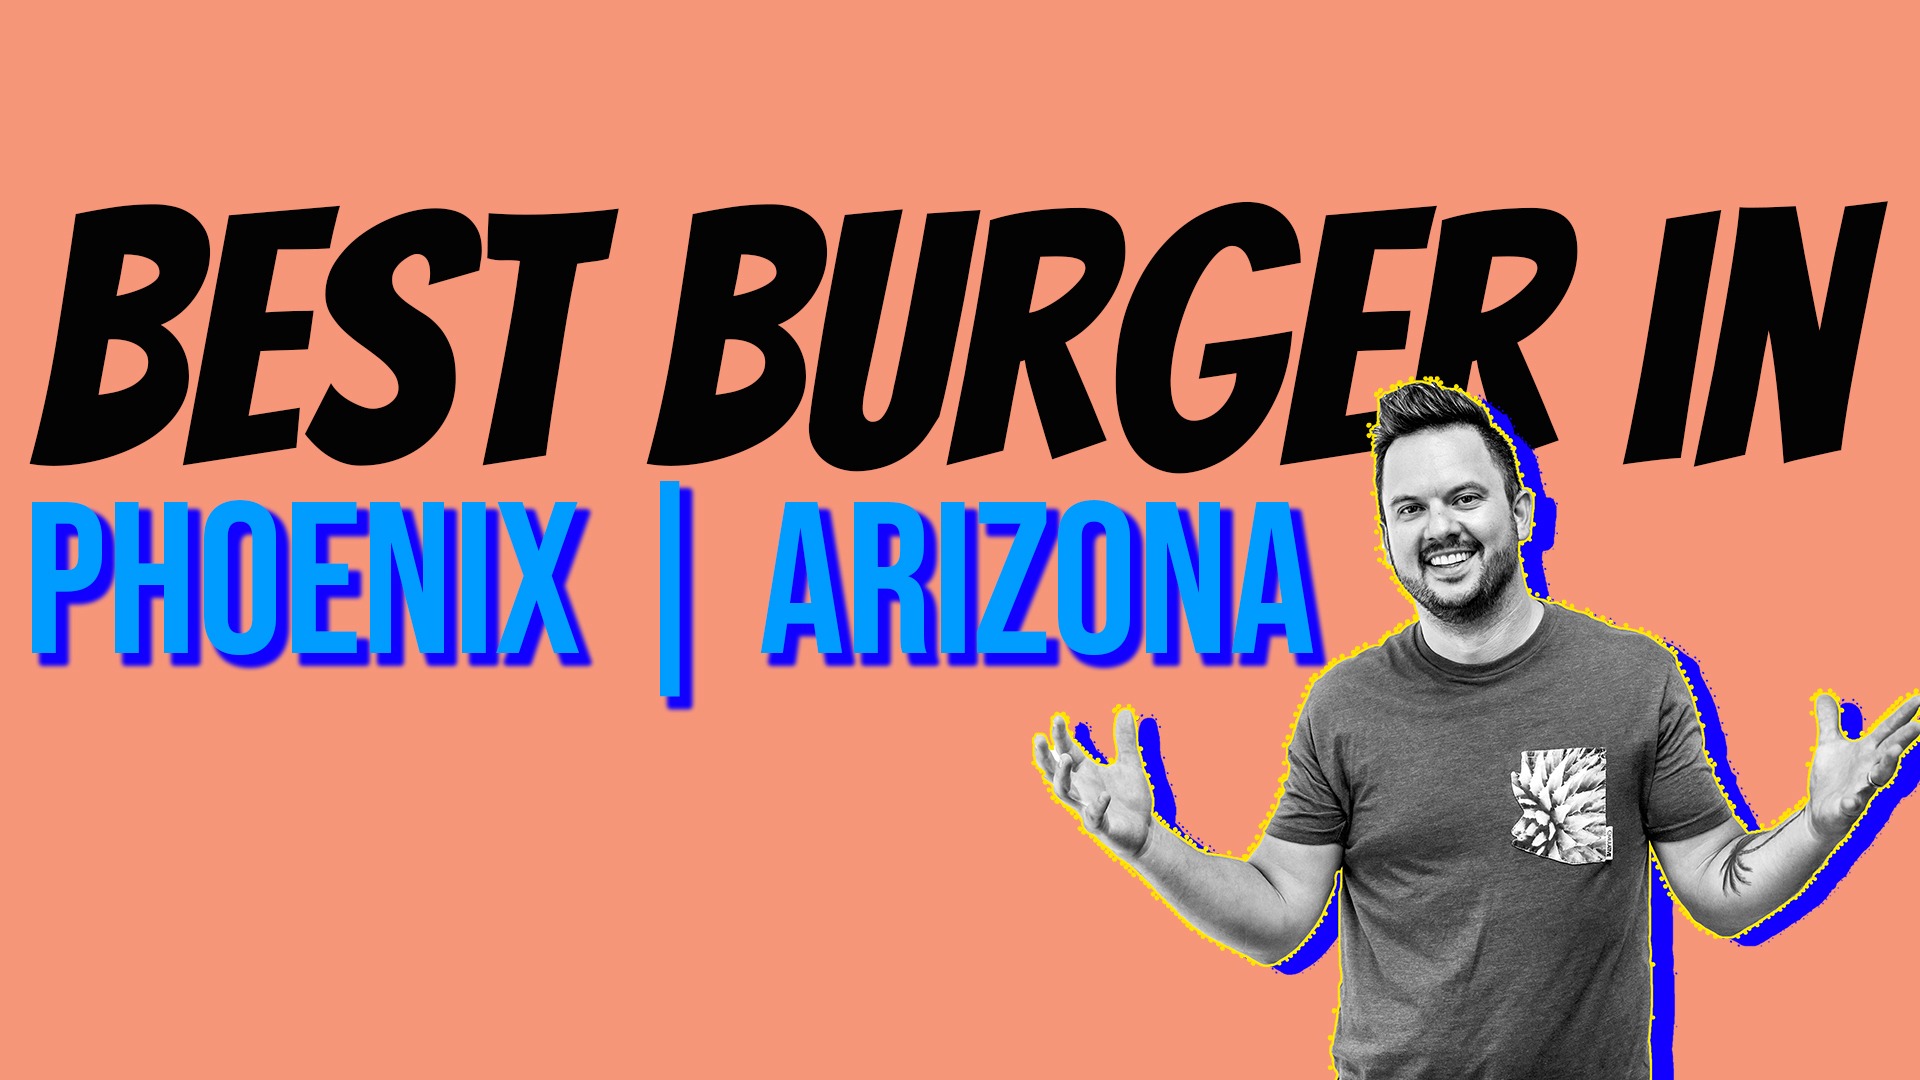 Best Burger in Phoenix